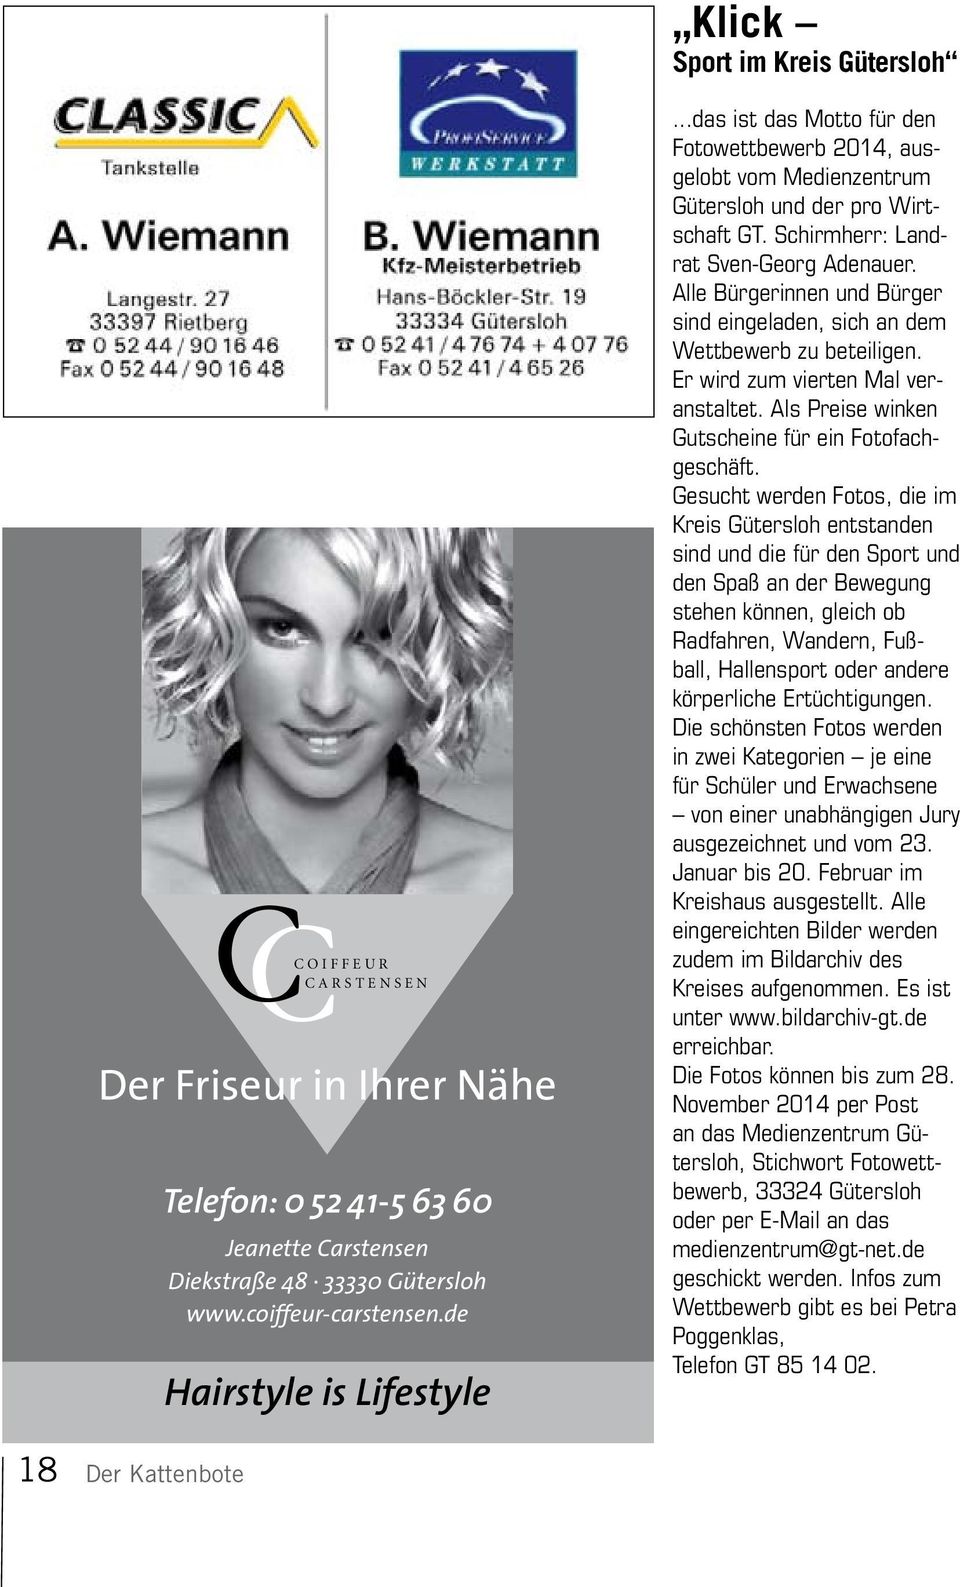 de Hairstyle is Lifestyle...das ist das Motto für den Fotowettbewerb 2014, ausgelobt vom Medienzentrum Gütersloh und der pro Wirtschaft GT. Schirmherr: Landrat Sven-Georg Adenauer.